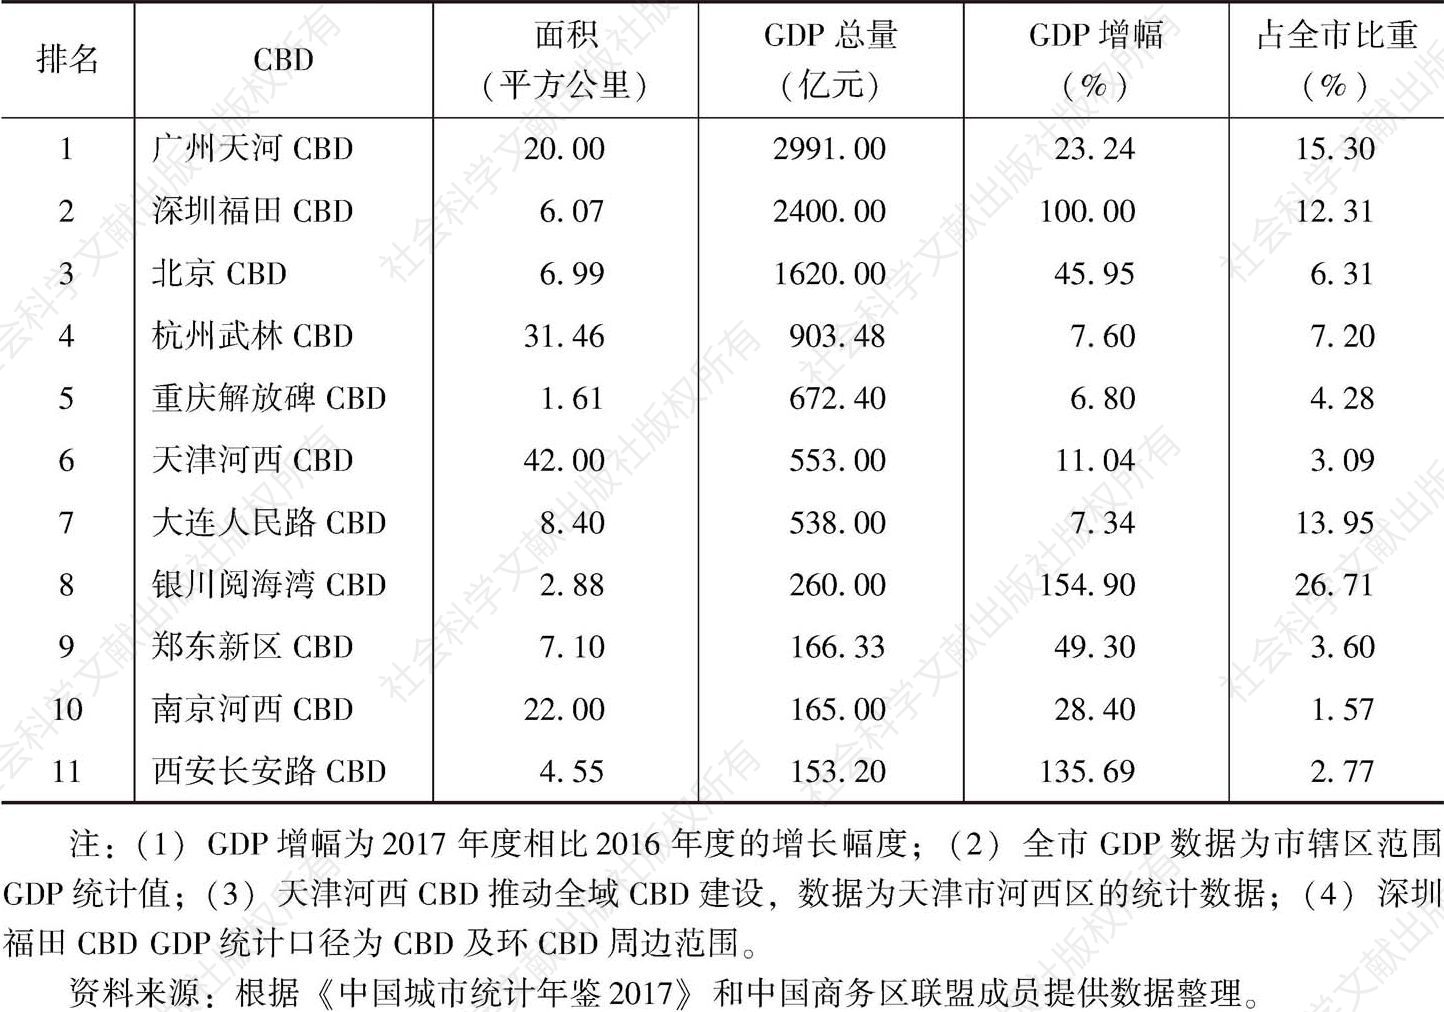 表1 2017年中国部分CBD经济发展比较（按经济总量排序）